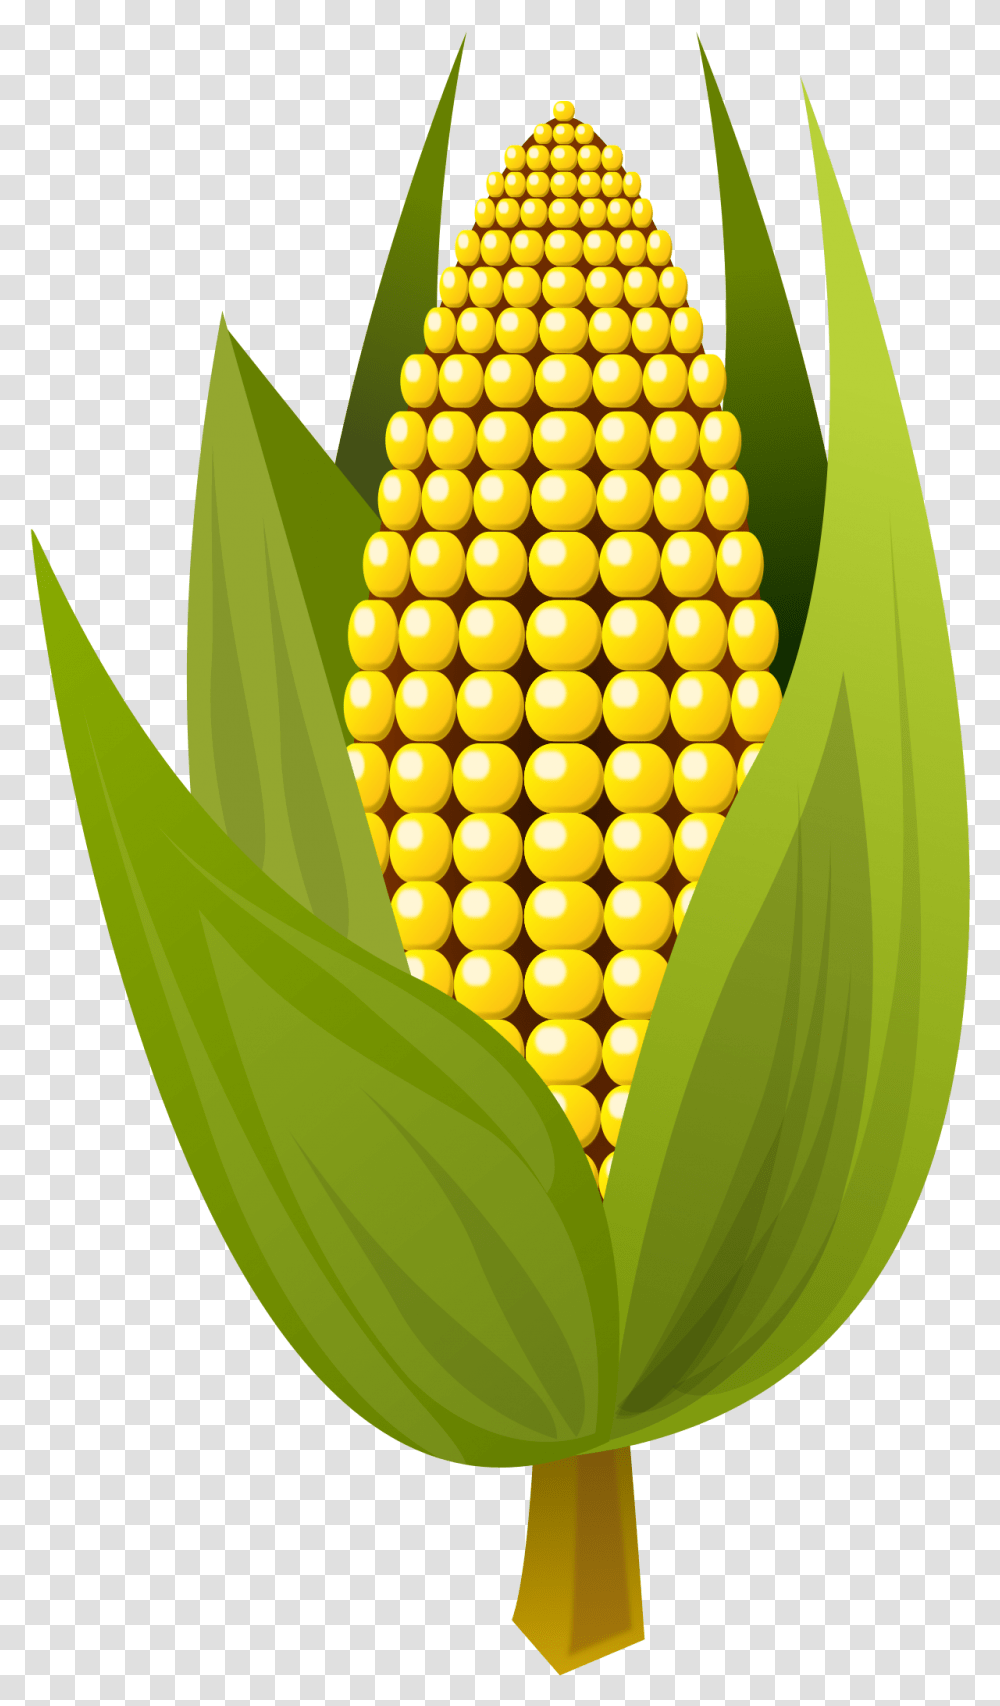 Maizefruitleaf Corn Clipart, Plant, Vegetable, Food, Pineapple Transparent Png